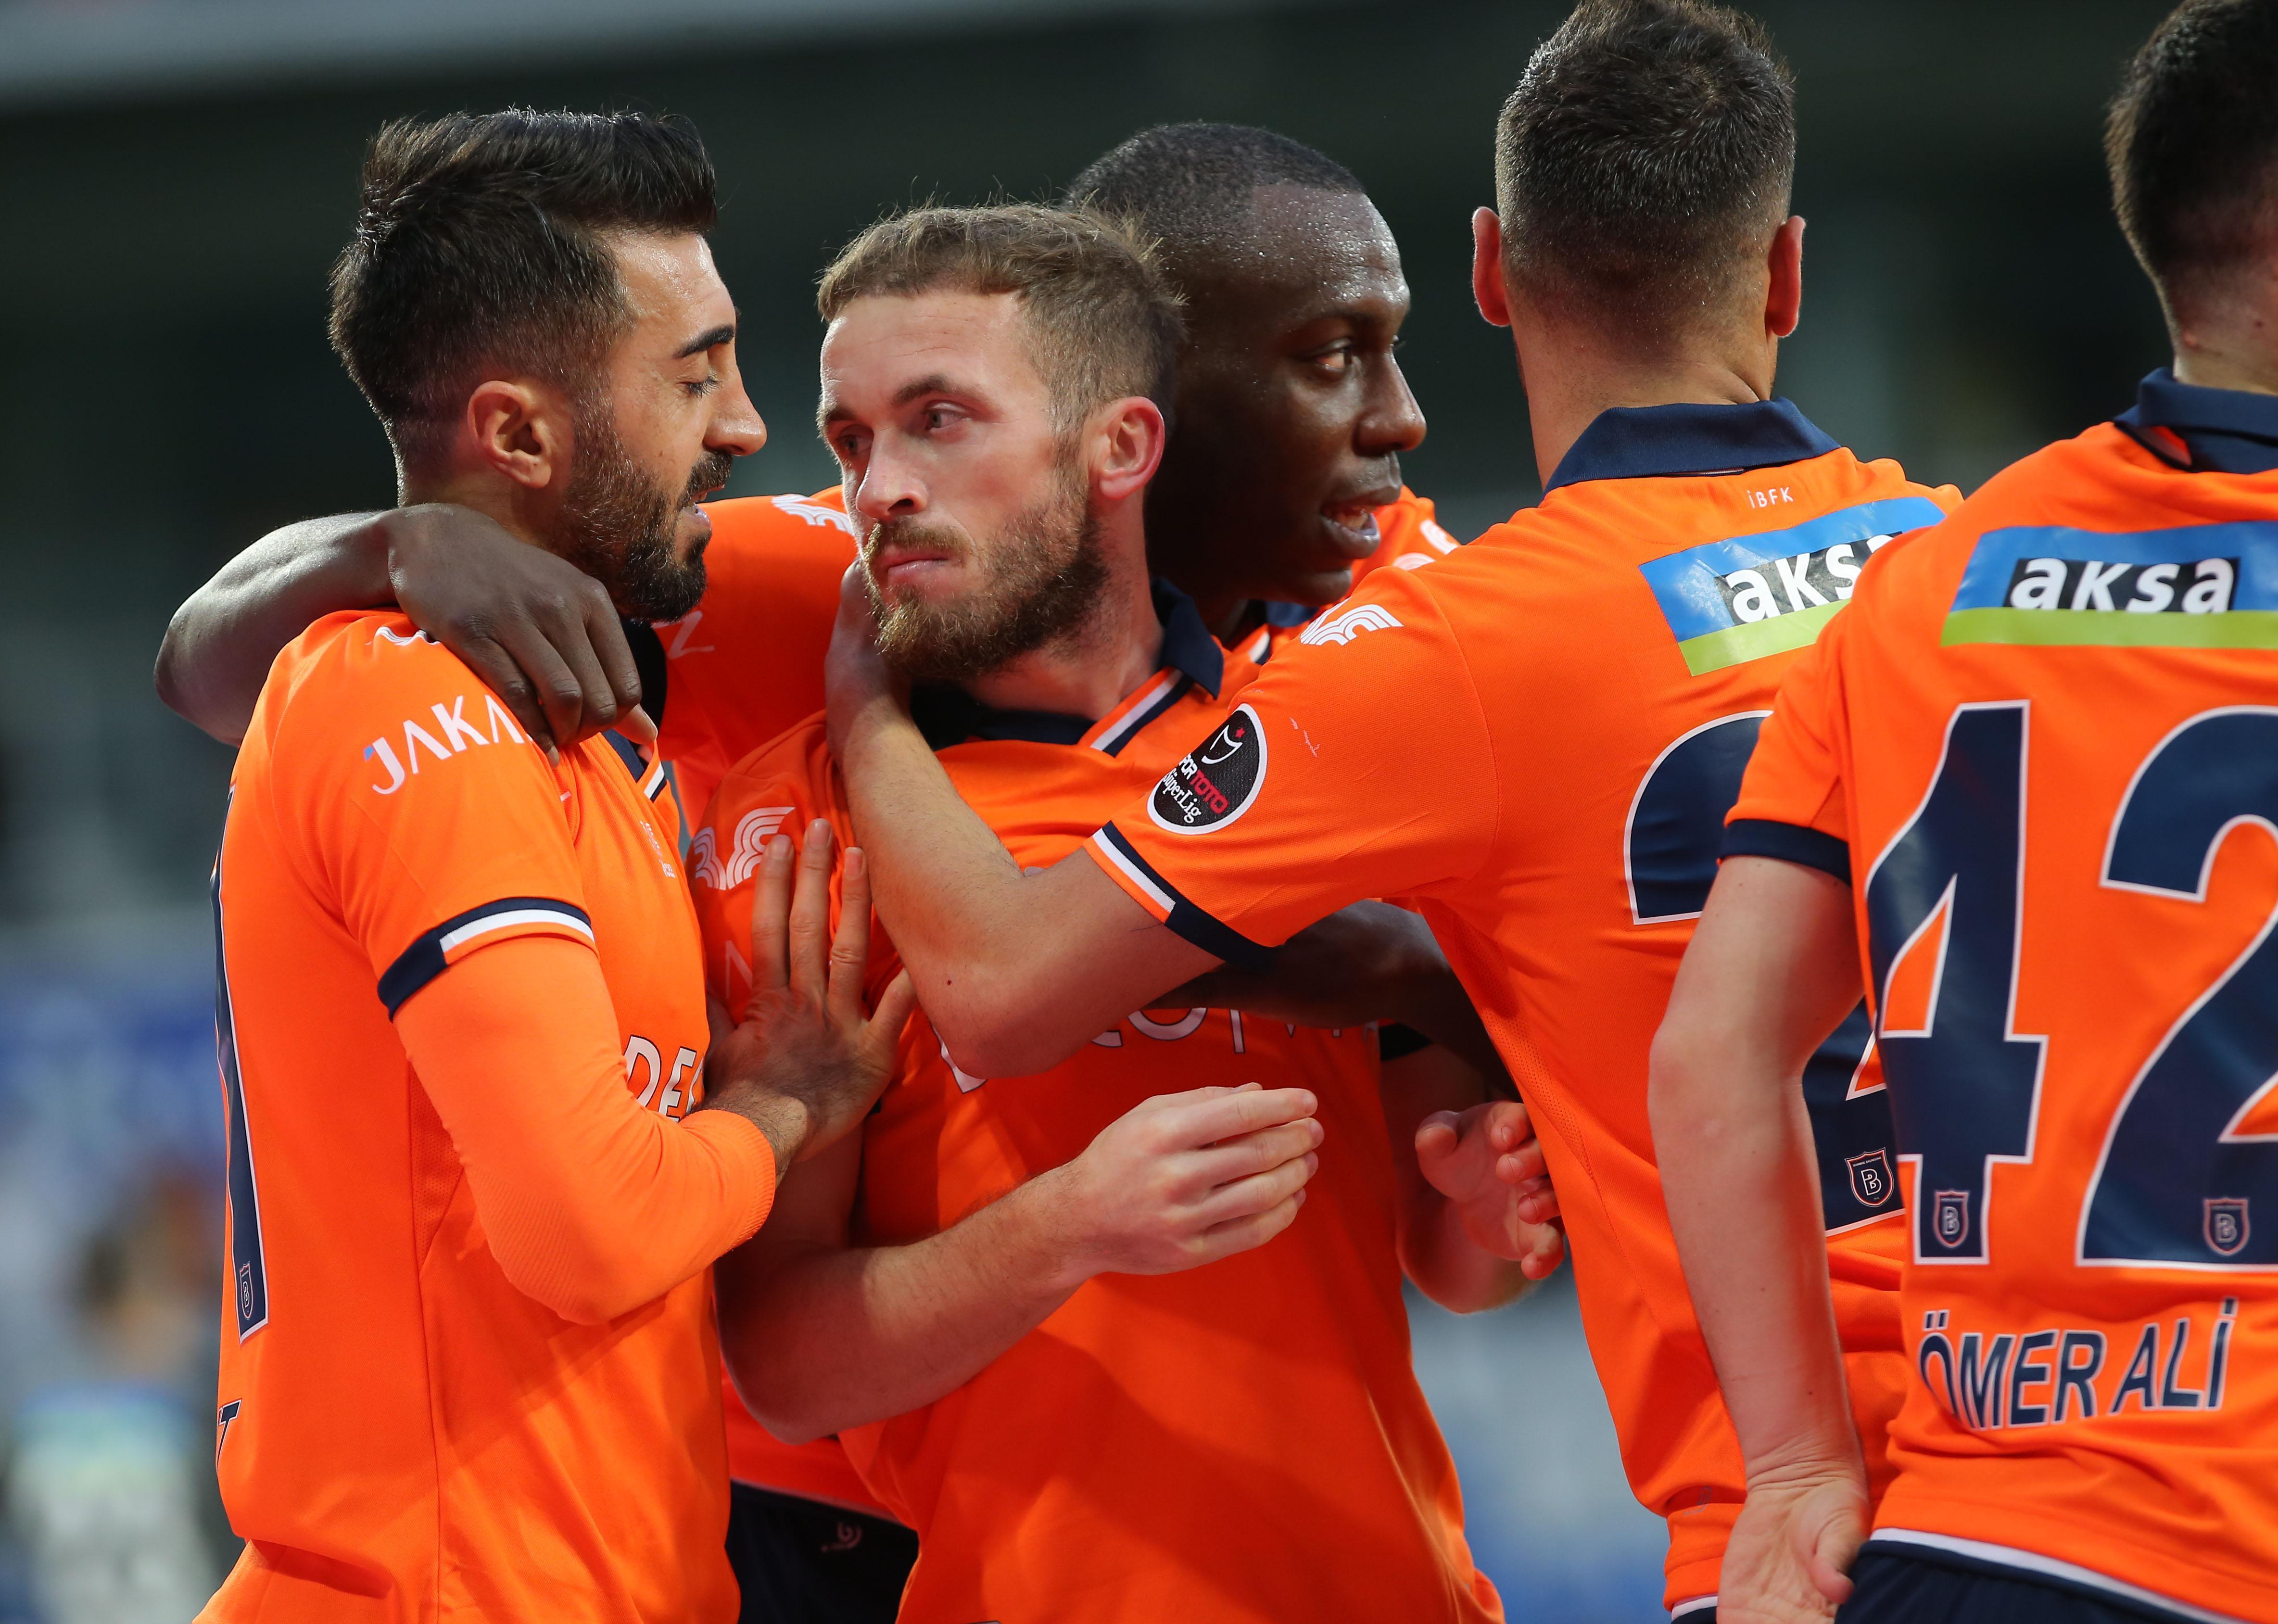 ÖZET | Başakşehir - Kasımpaşa maç sonucu: 2-1